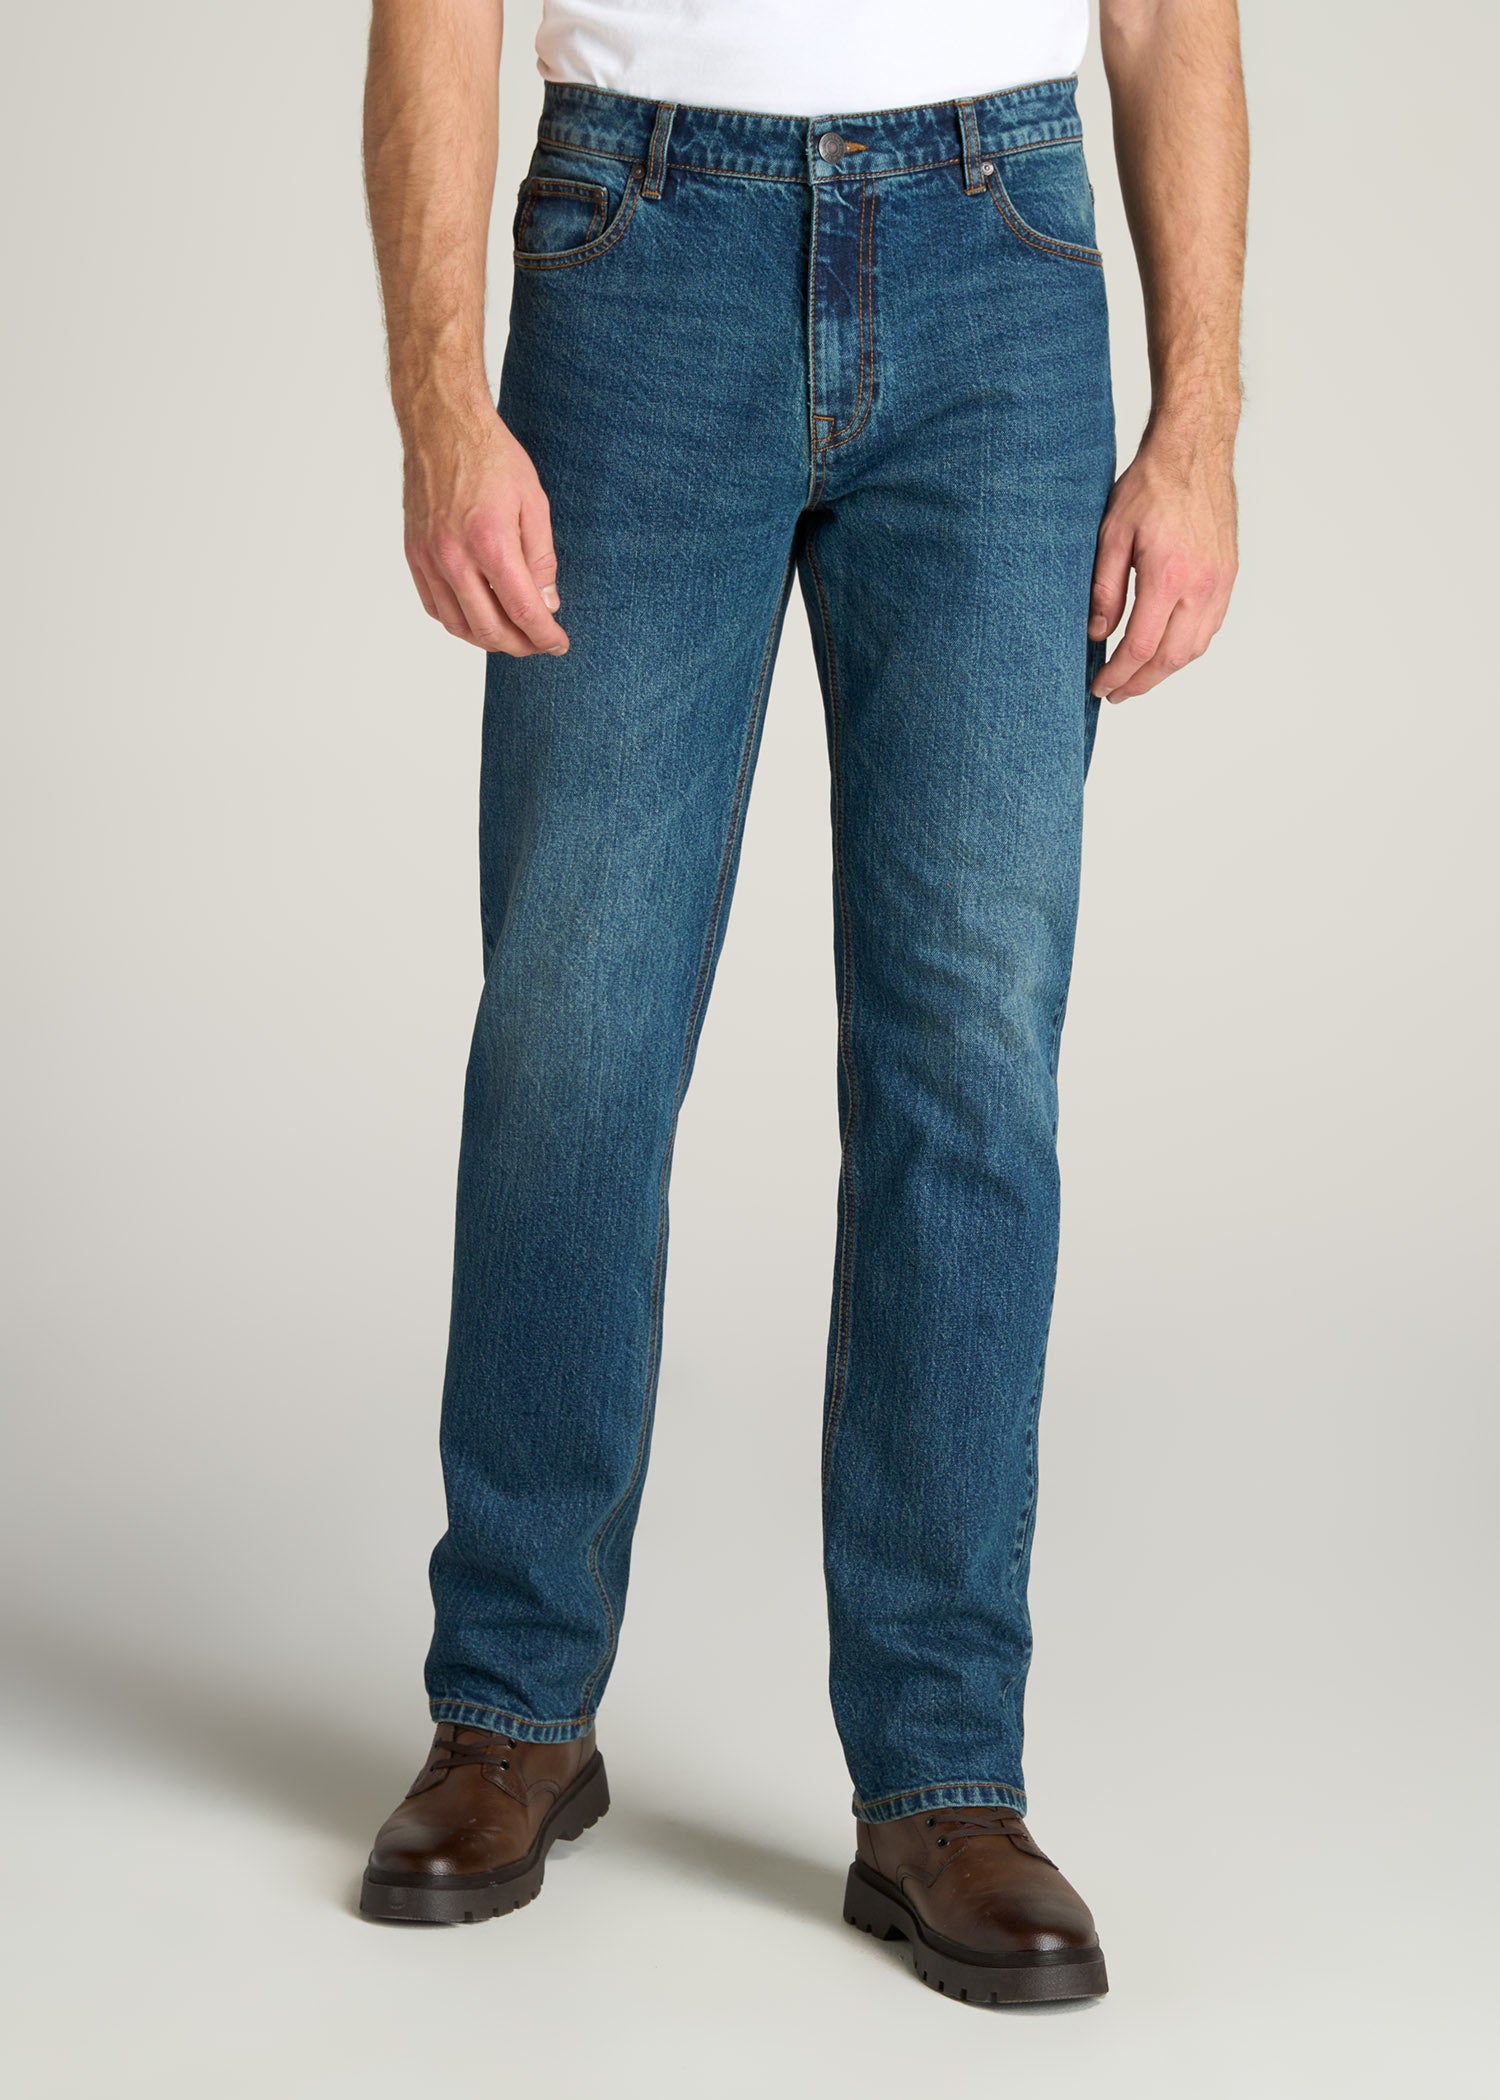 Men's Straight Jeans - Straight Legged Jeans